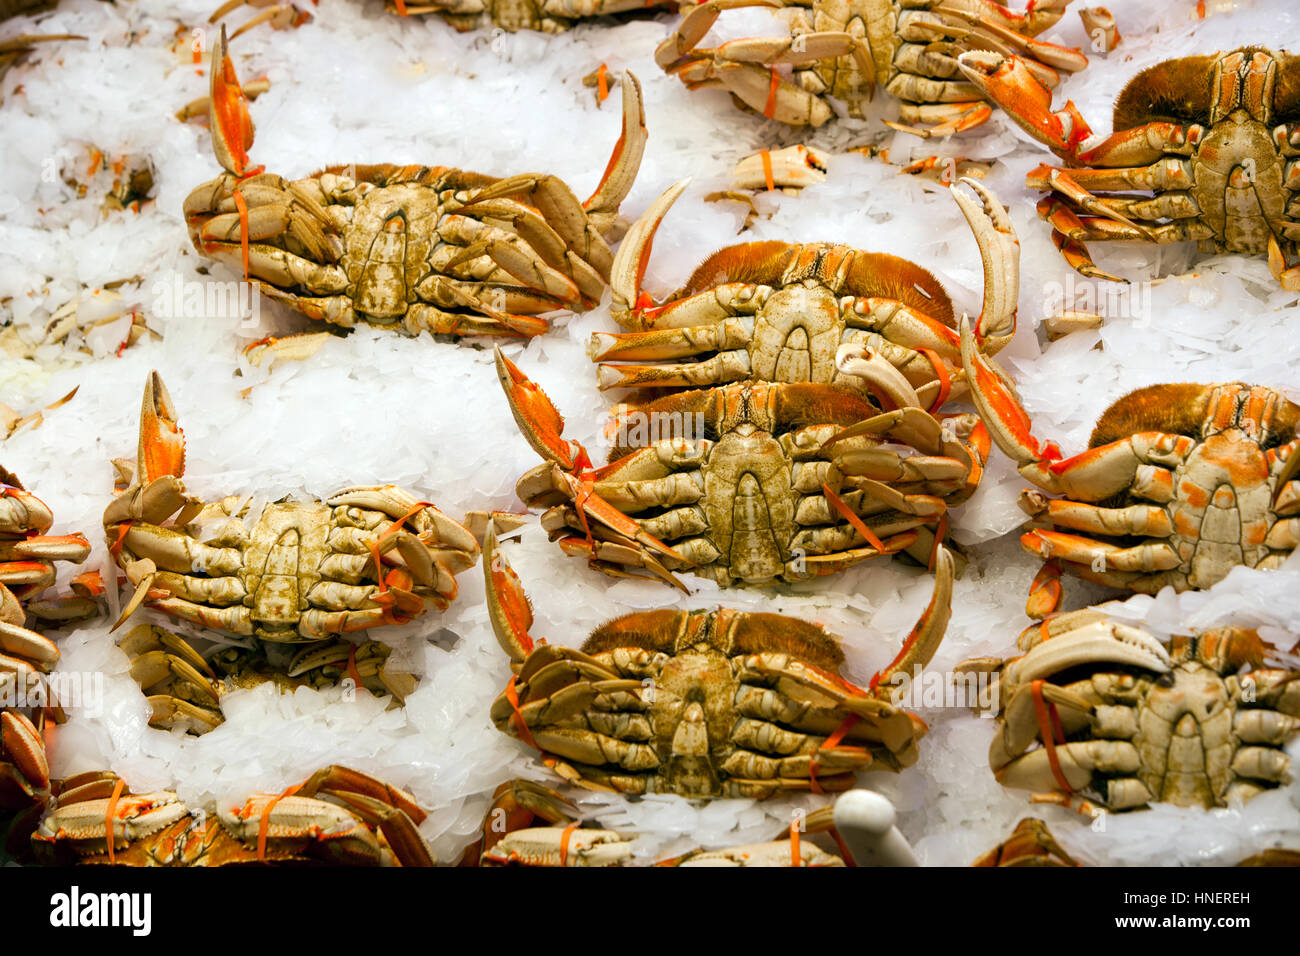 Les crabes à l'affiche au marché de poissons Banque D'Images